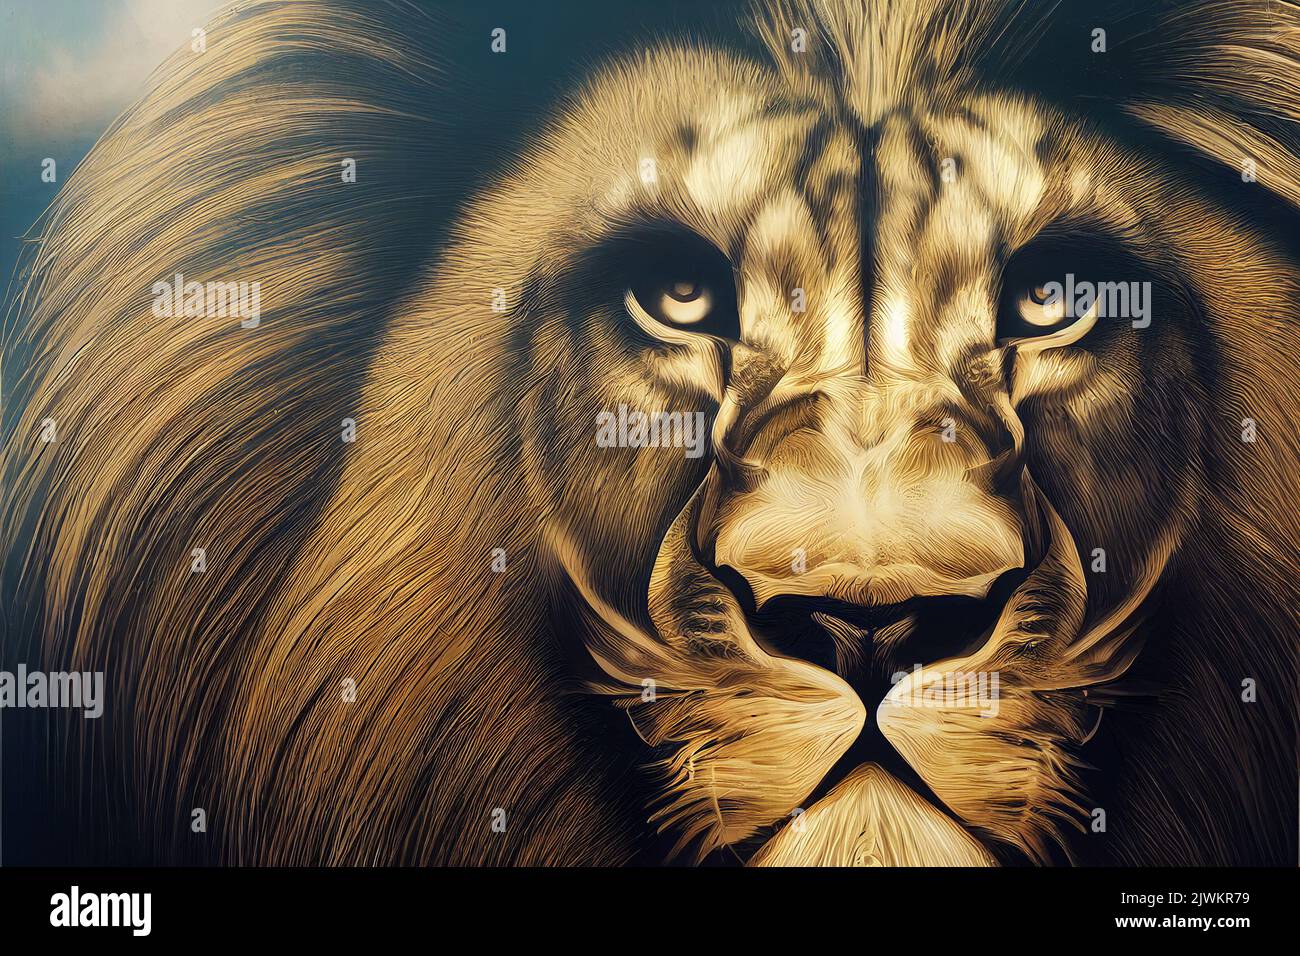 Illustrazione grafica graffiti di un leone forte. Figura ideale per l'uso virtuale o stampato. Foto Stock